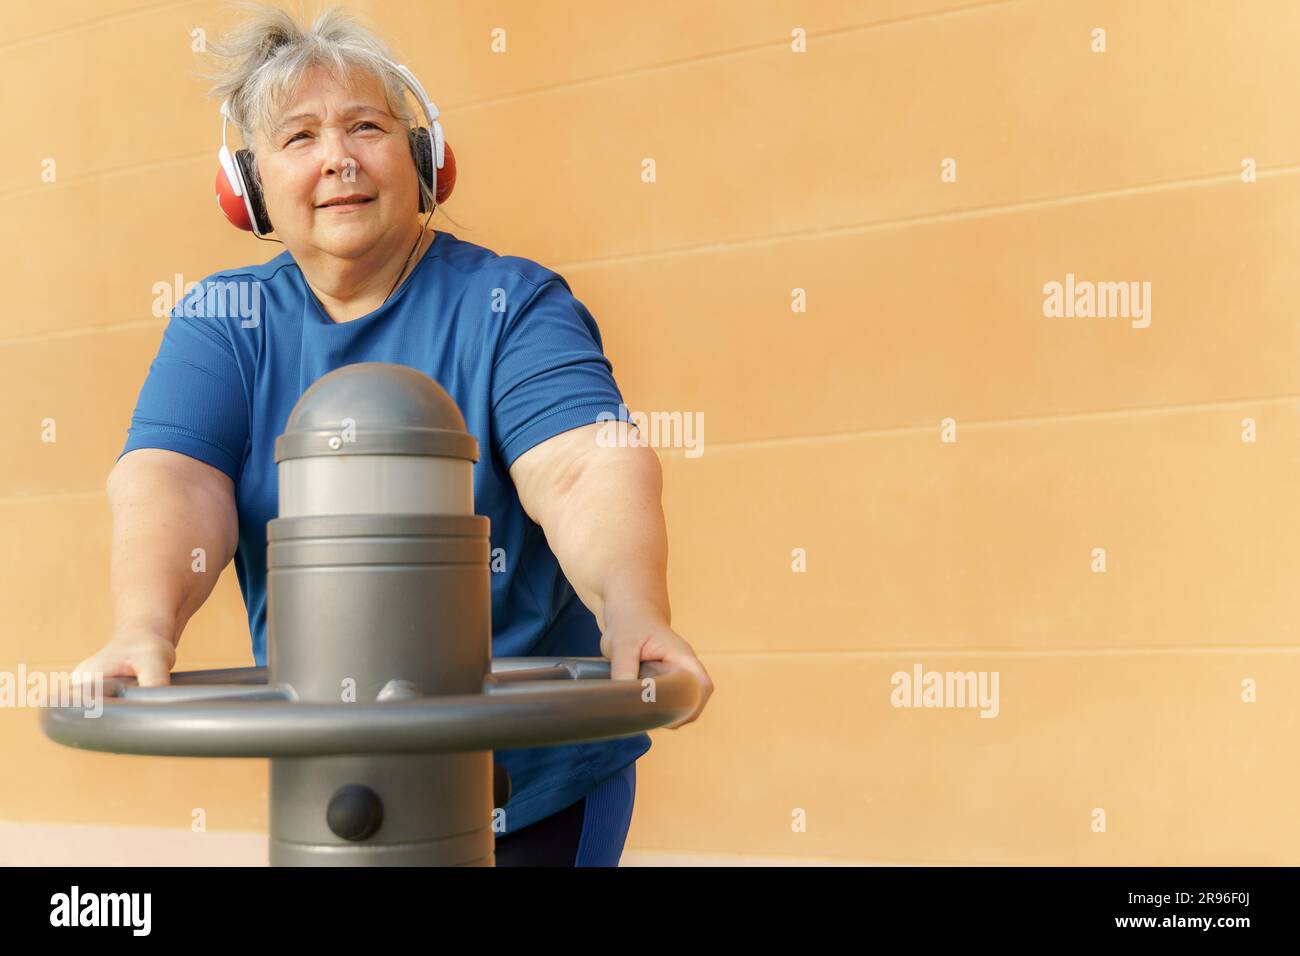 Donna anziana obesa attiva in abbigliamento sportivo che si allena su una macchina da palestra in una palestra del parco mentre ascolta la musica con le cuffie Foto Stock